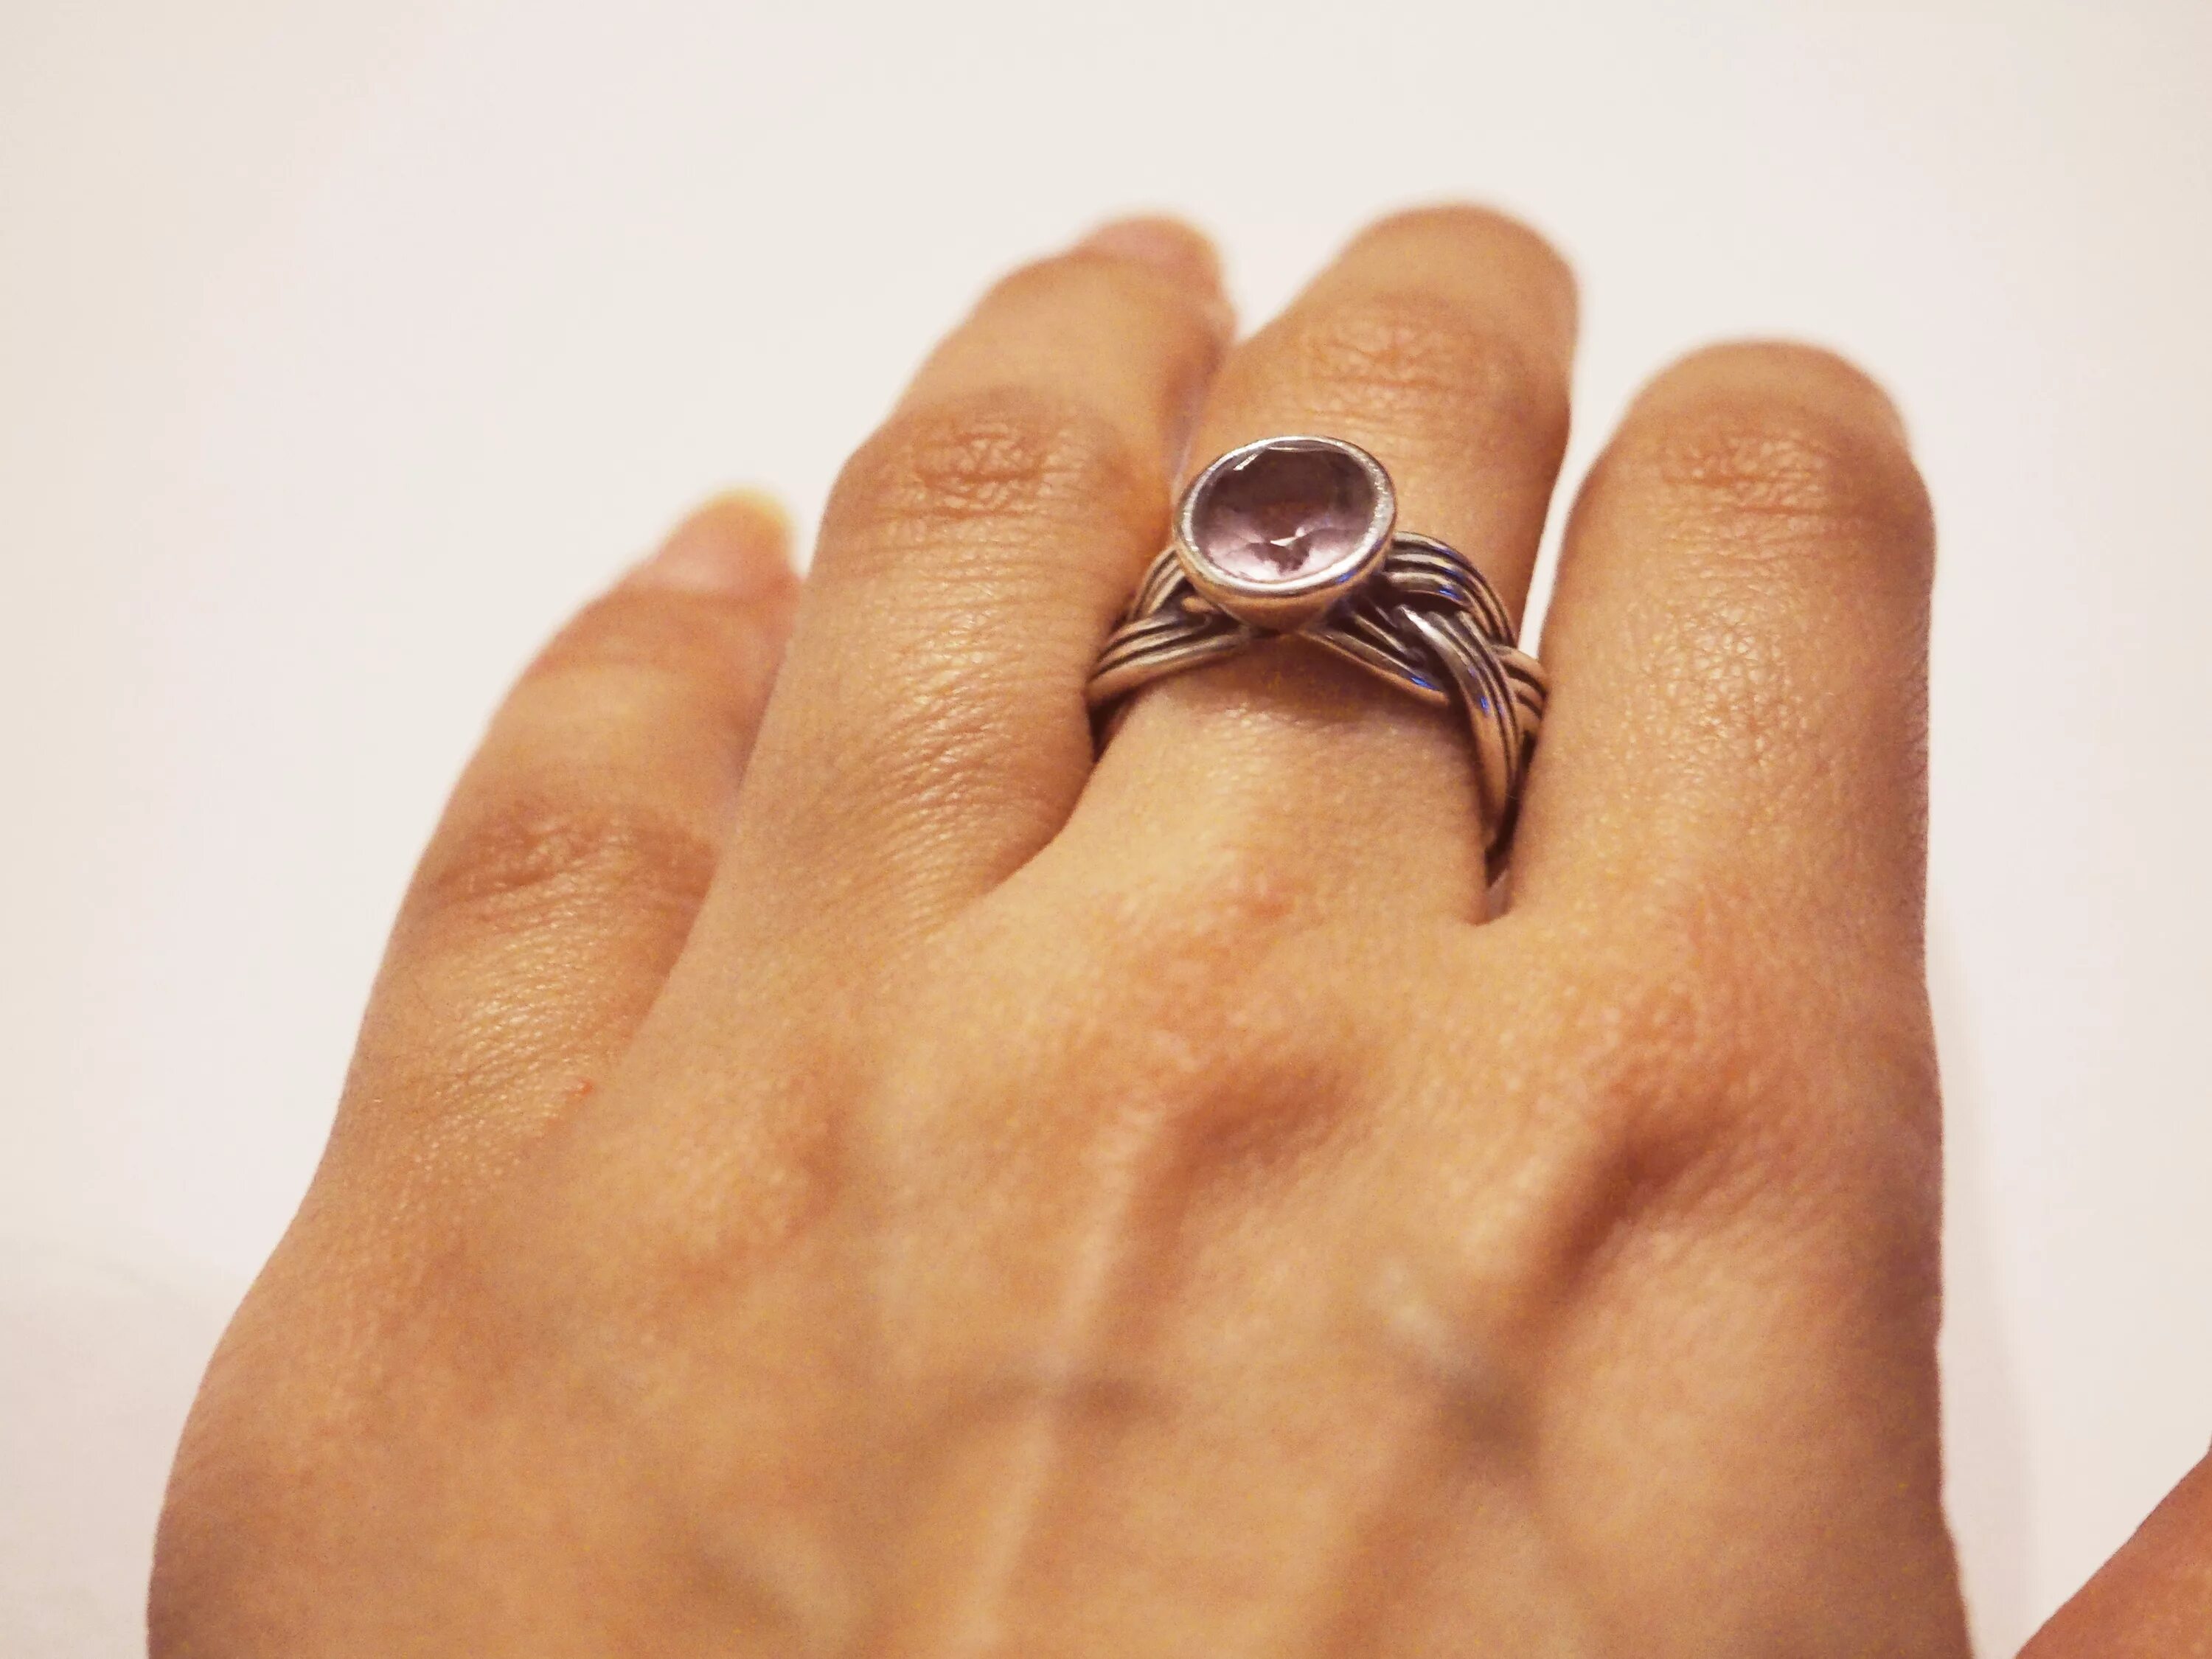 Перстень на руке. Кольцо на пальце. Кольцо на мизинец женское. Девушка с кольцом на пальце.